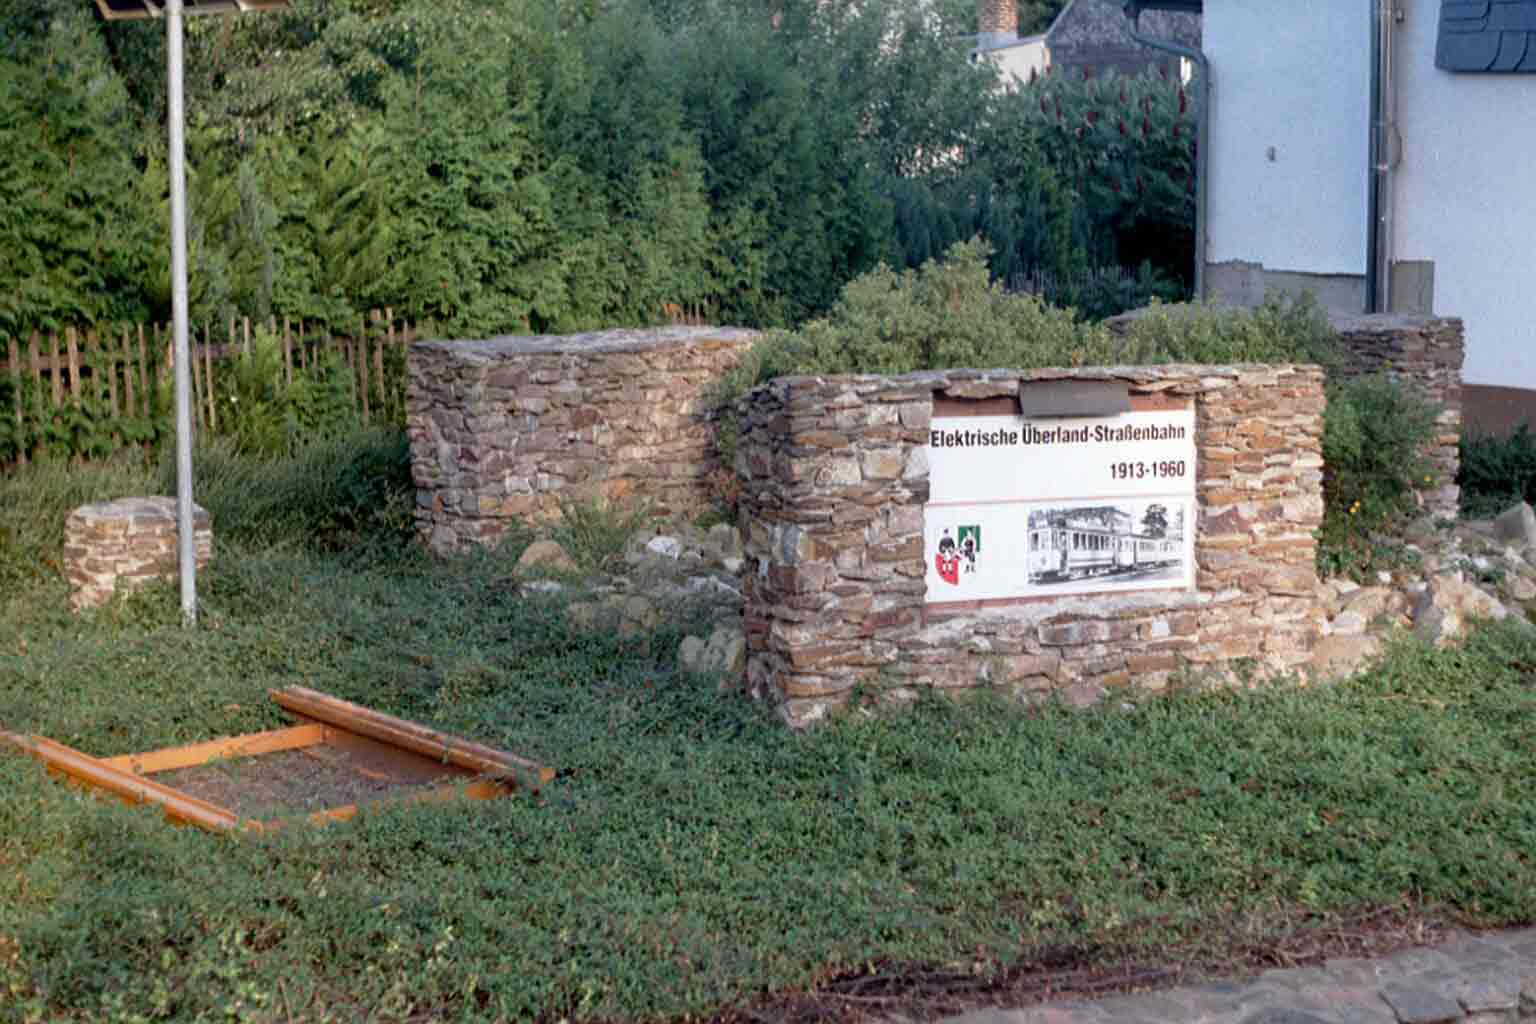 Denkmal in Gersdorf, Ansicht von der Straße aus gesehen (Sommer)